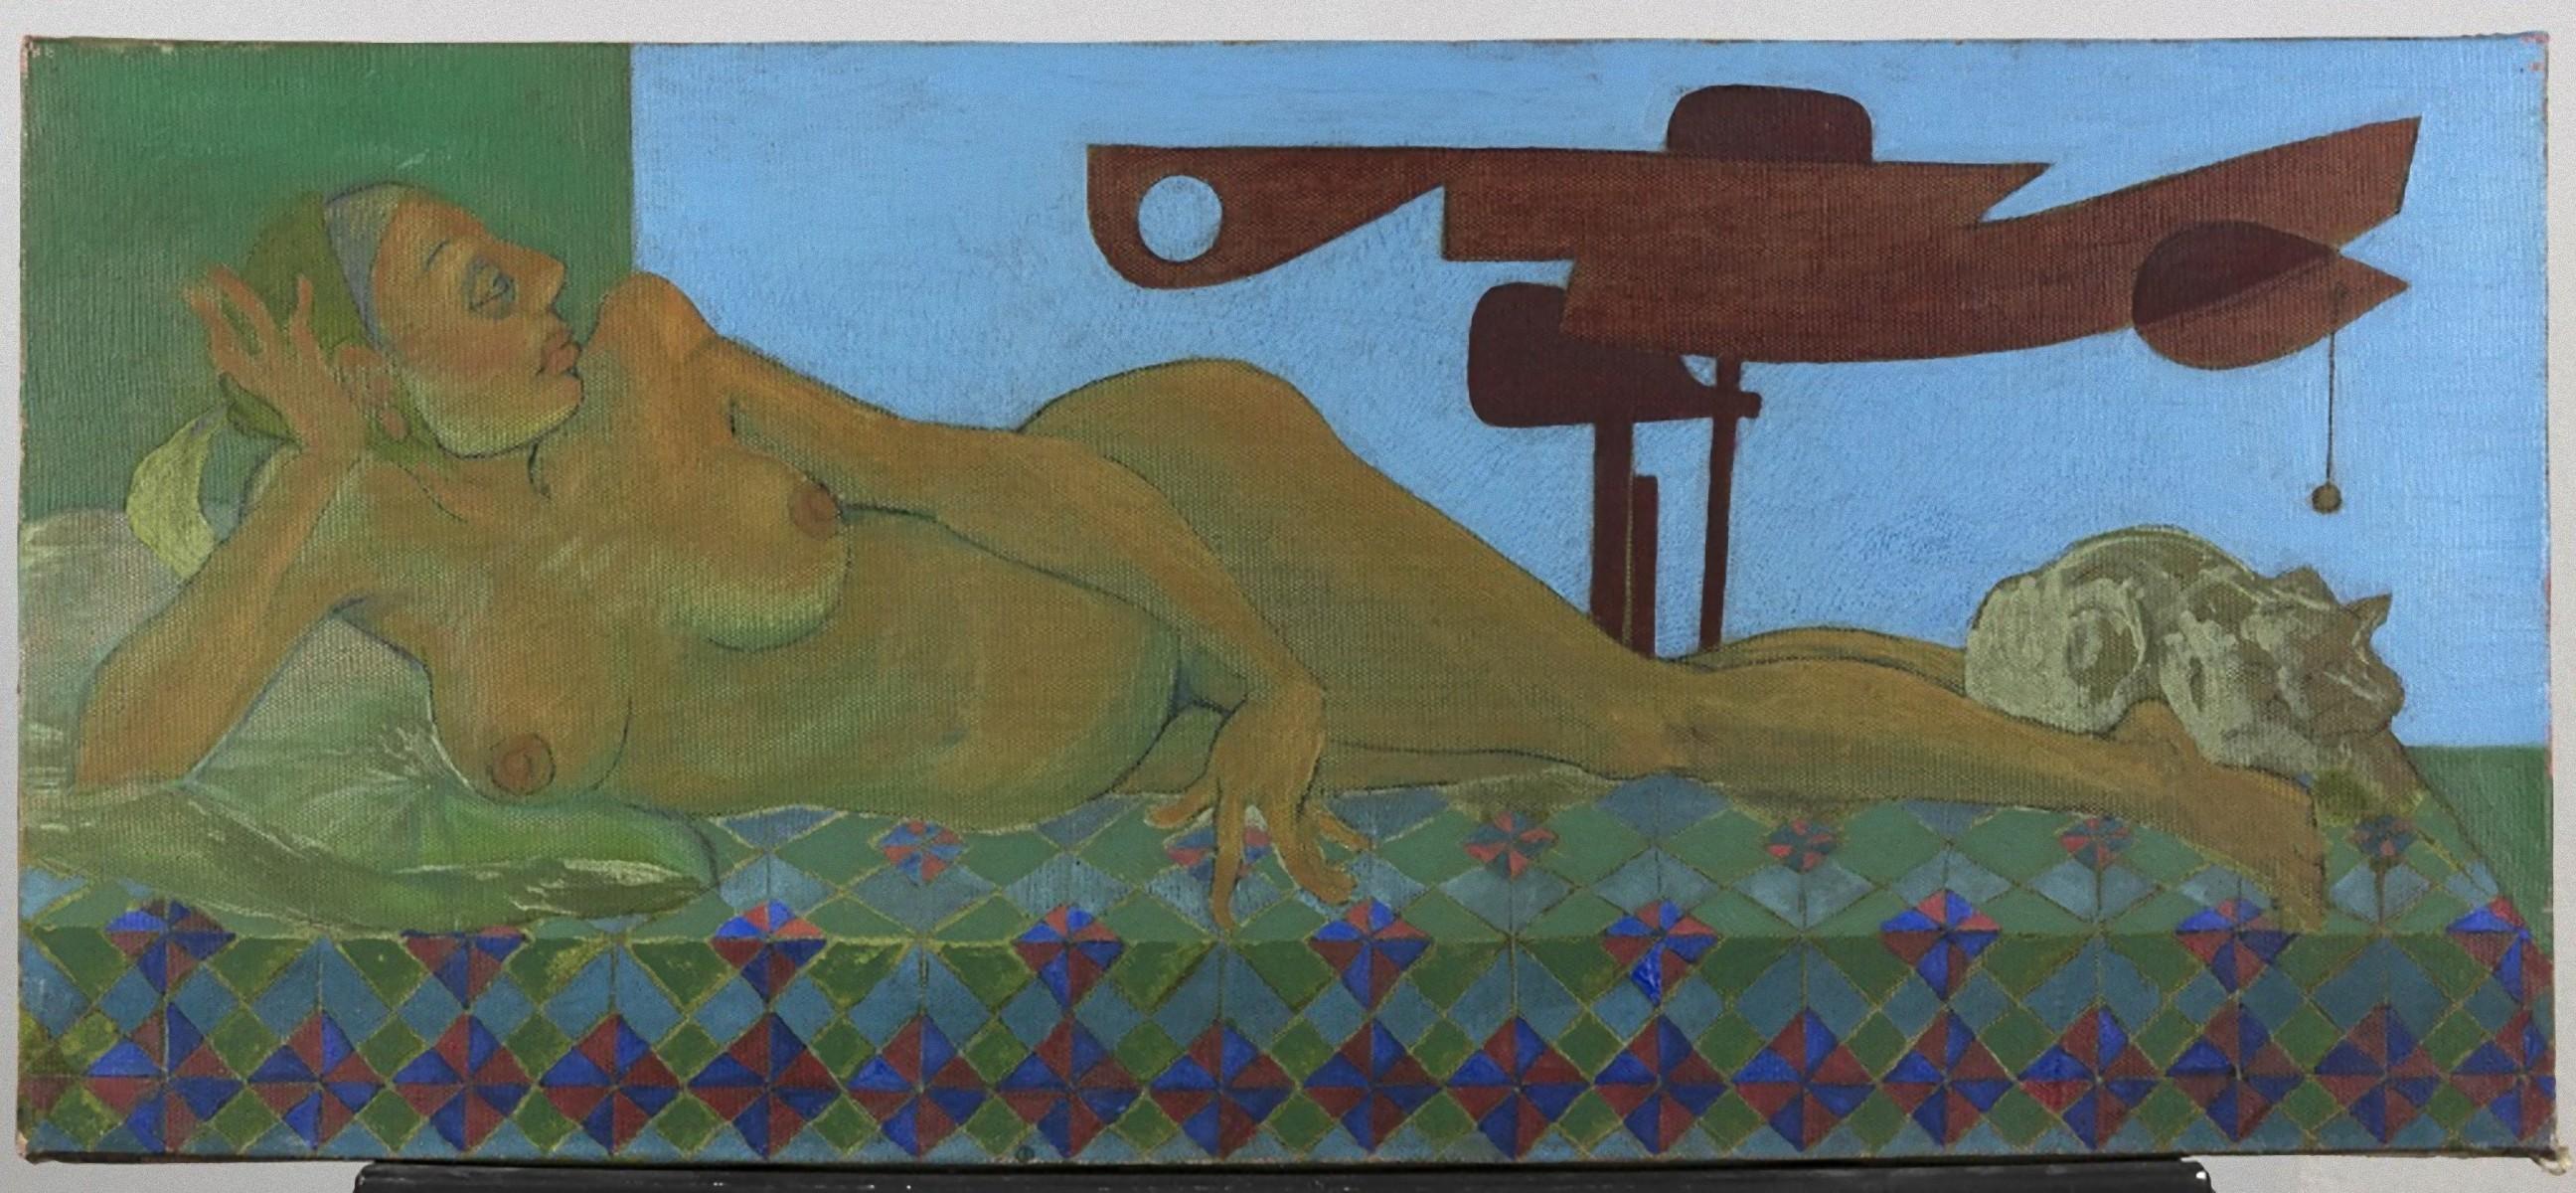 Lying Nude with Signals 1 (Titre original : Nudo disteso con segnali 1) est une œuvre d'art originale contemporaine réalisée en 1988 par l'artiste italien Leo Guida (1992 - 2017).

Huile originale sur toile. 

Dimensions totales : cm 30 x 70.

Très